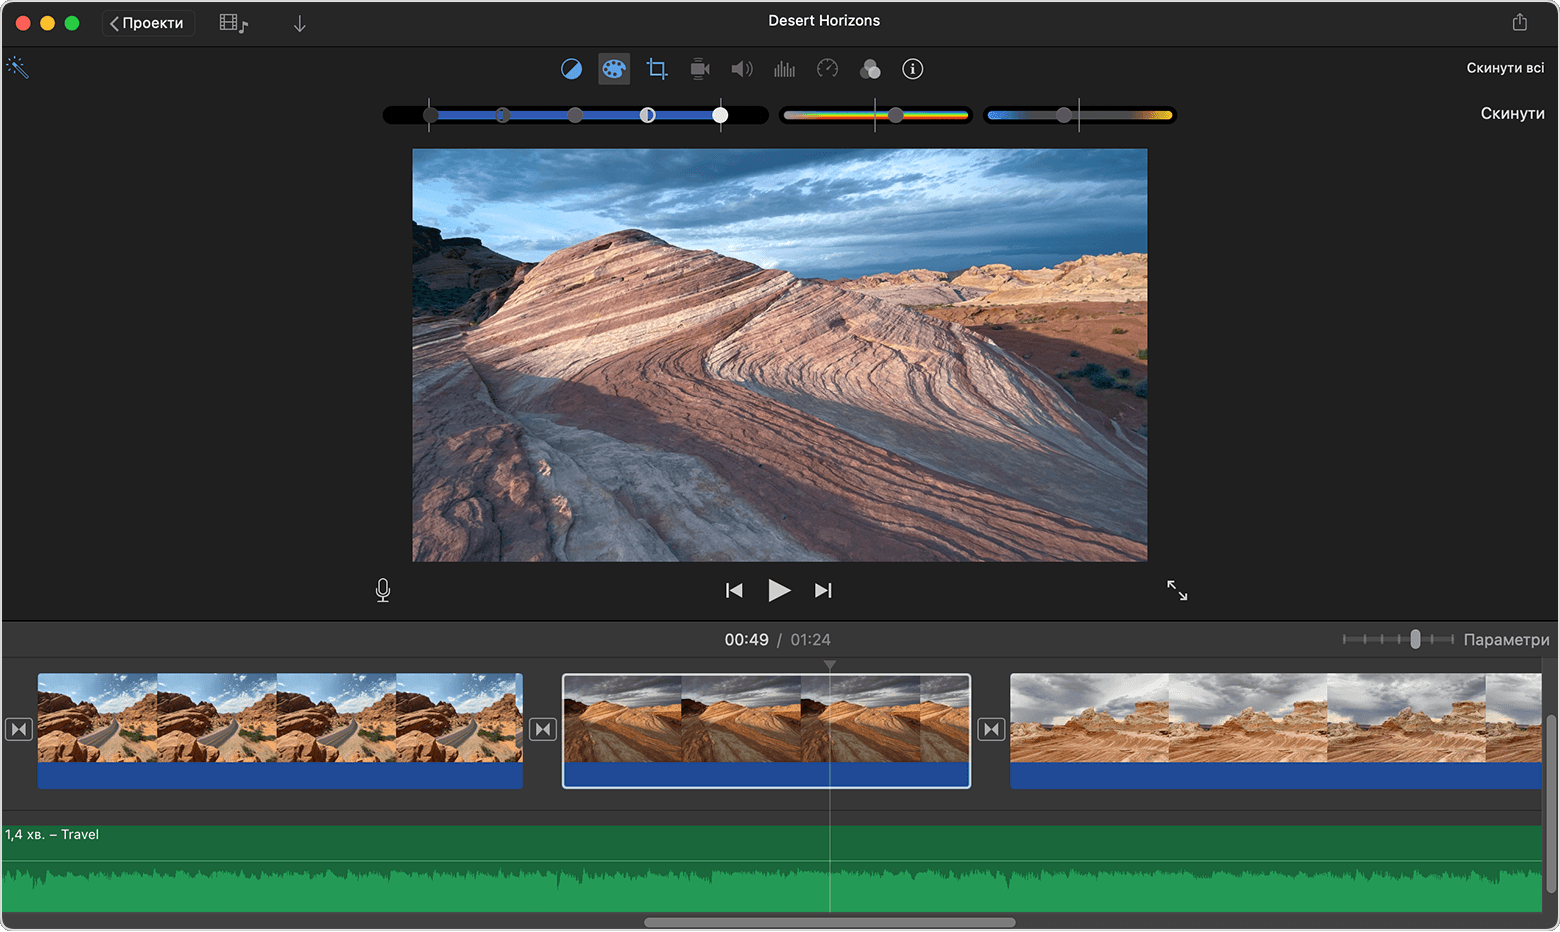 Вікно проєкту iMovie на Mac з елементами керування корекцією кольору